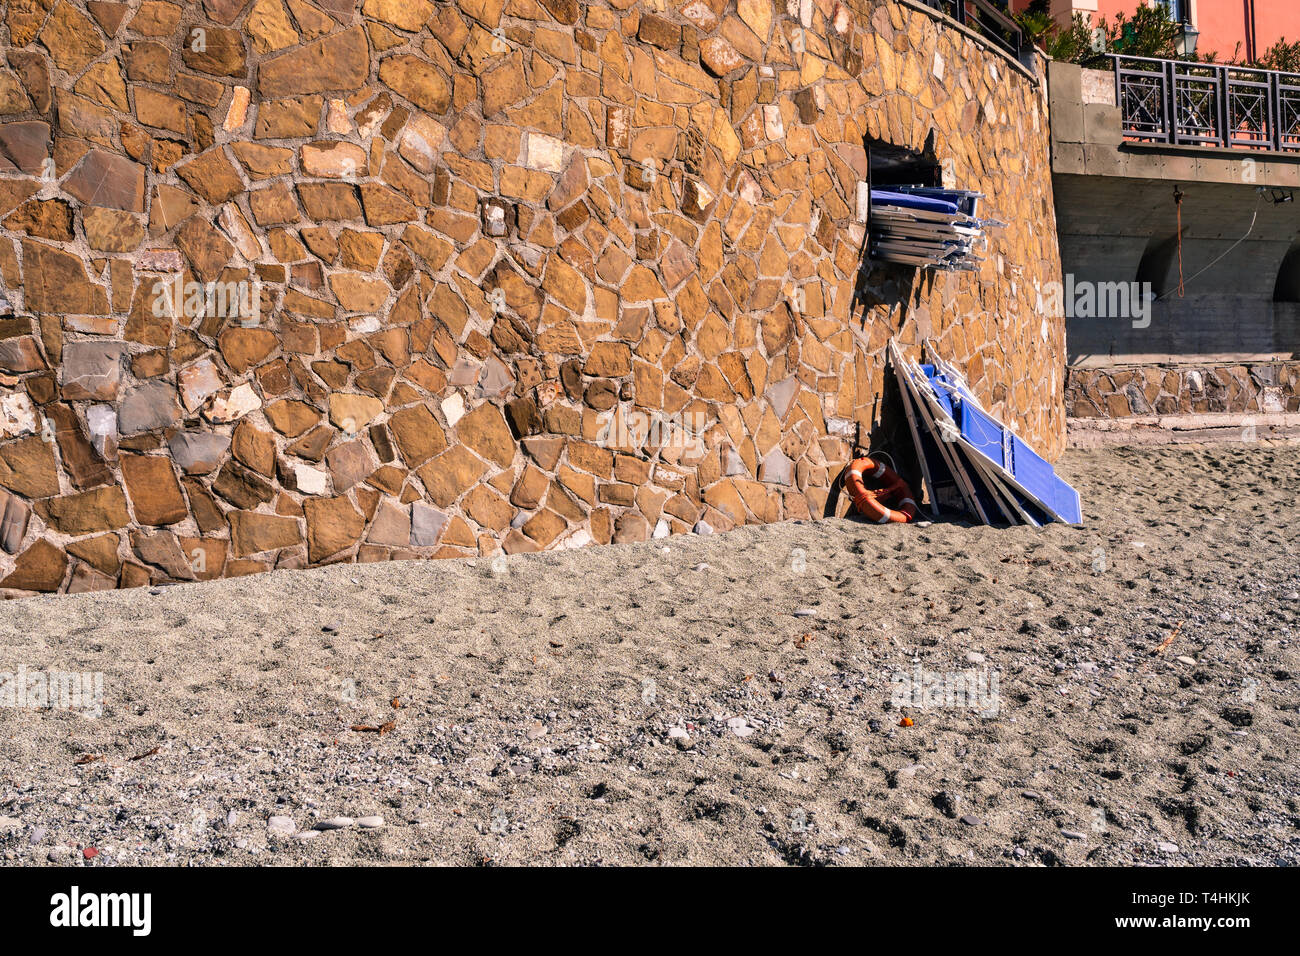 Nella famosa spiaggia di Monterosso al Mare qualcuno sta prendendo le sdraio in spiaggia per l'estate, le Cinque Terre Liguria, Italia Foto Stock